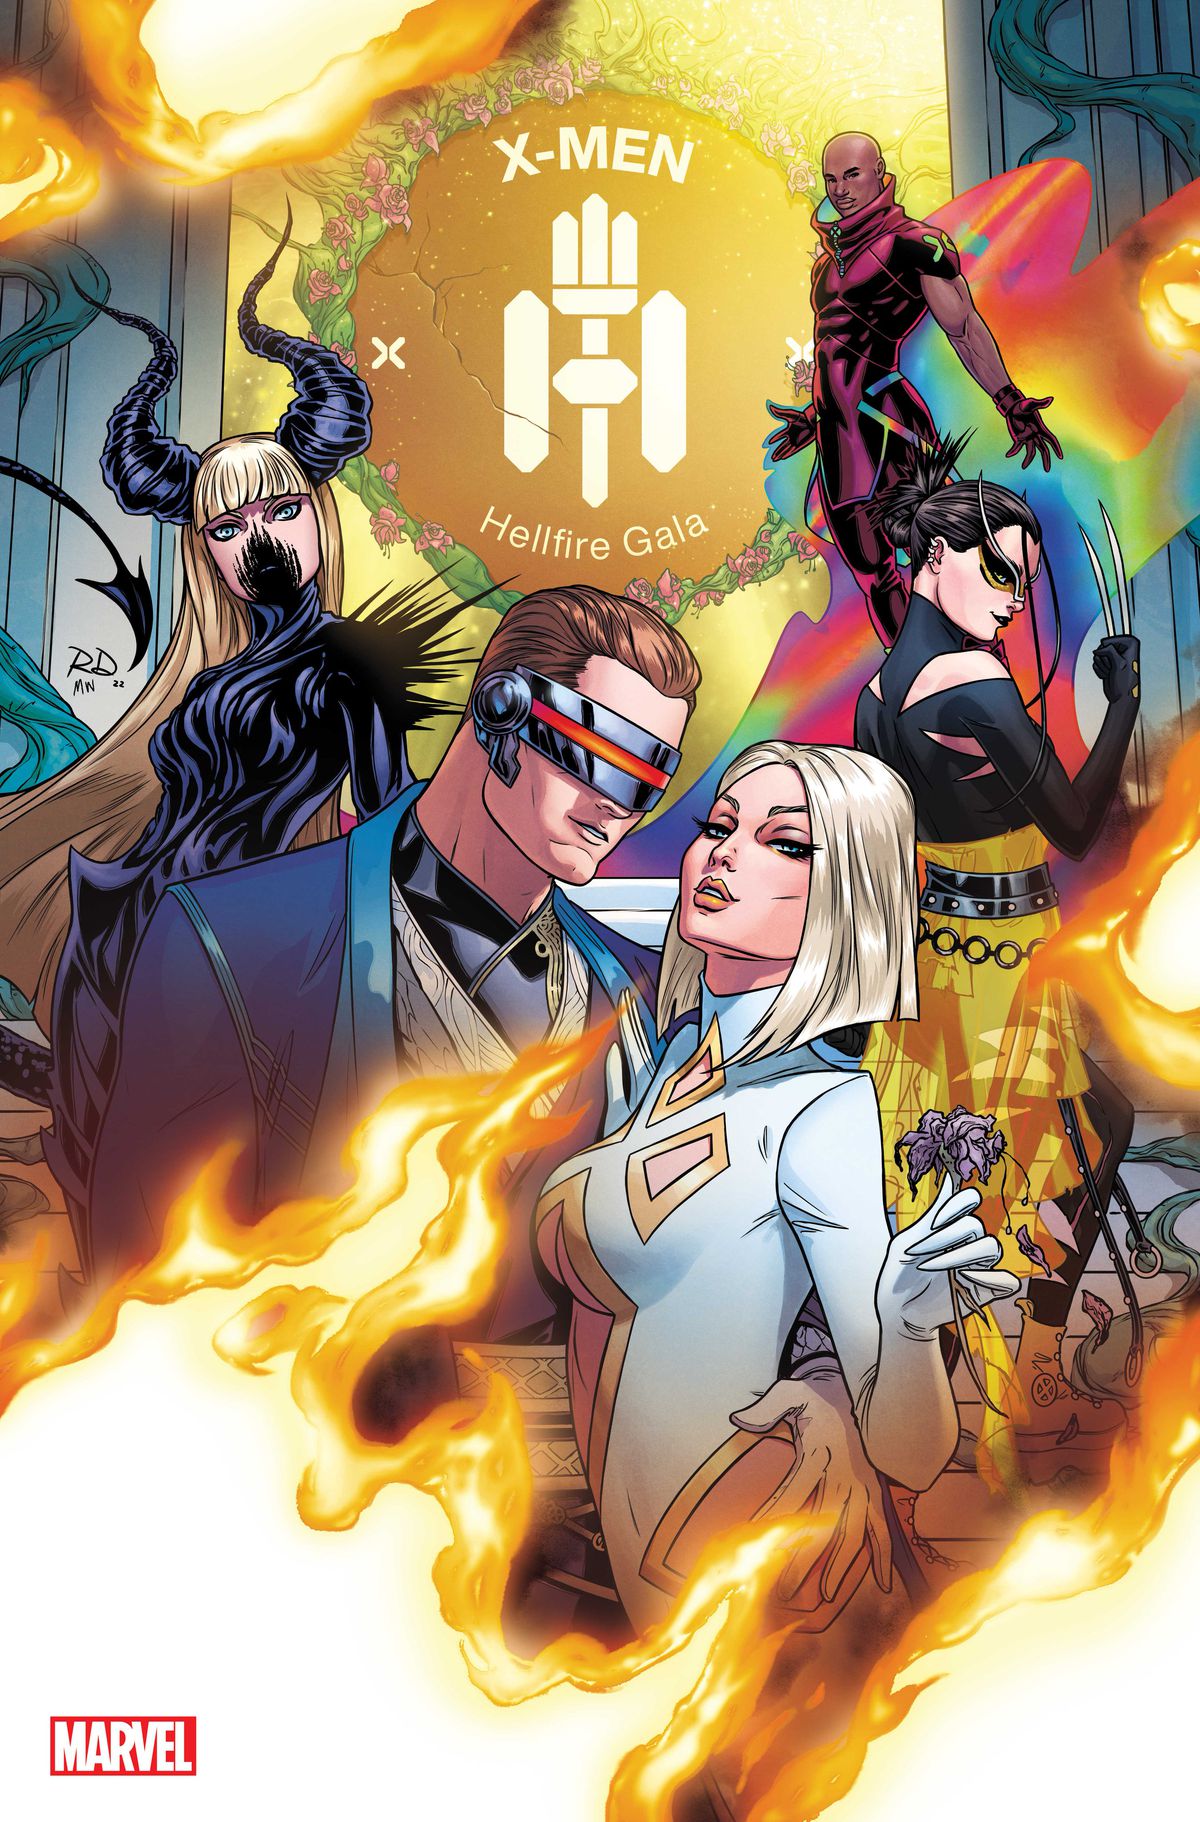 Ciclope ed Emma Frost posano in alta moda sulla copertina di X-Men: Hellfire Gala #1 (2022).  Dietro di loro posano anche Wolverine (Laura Kinney), Magik e Synch. 